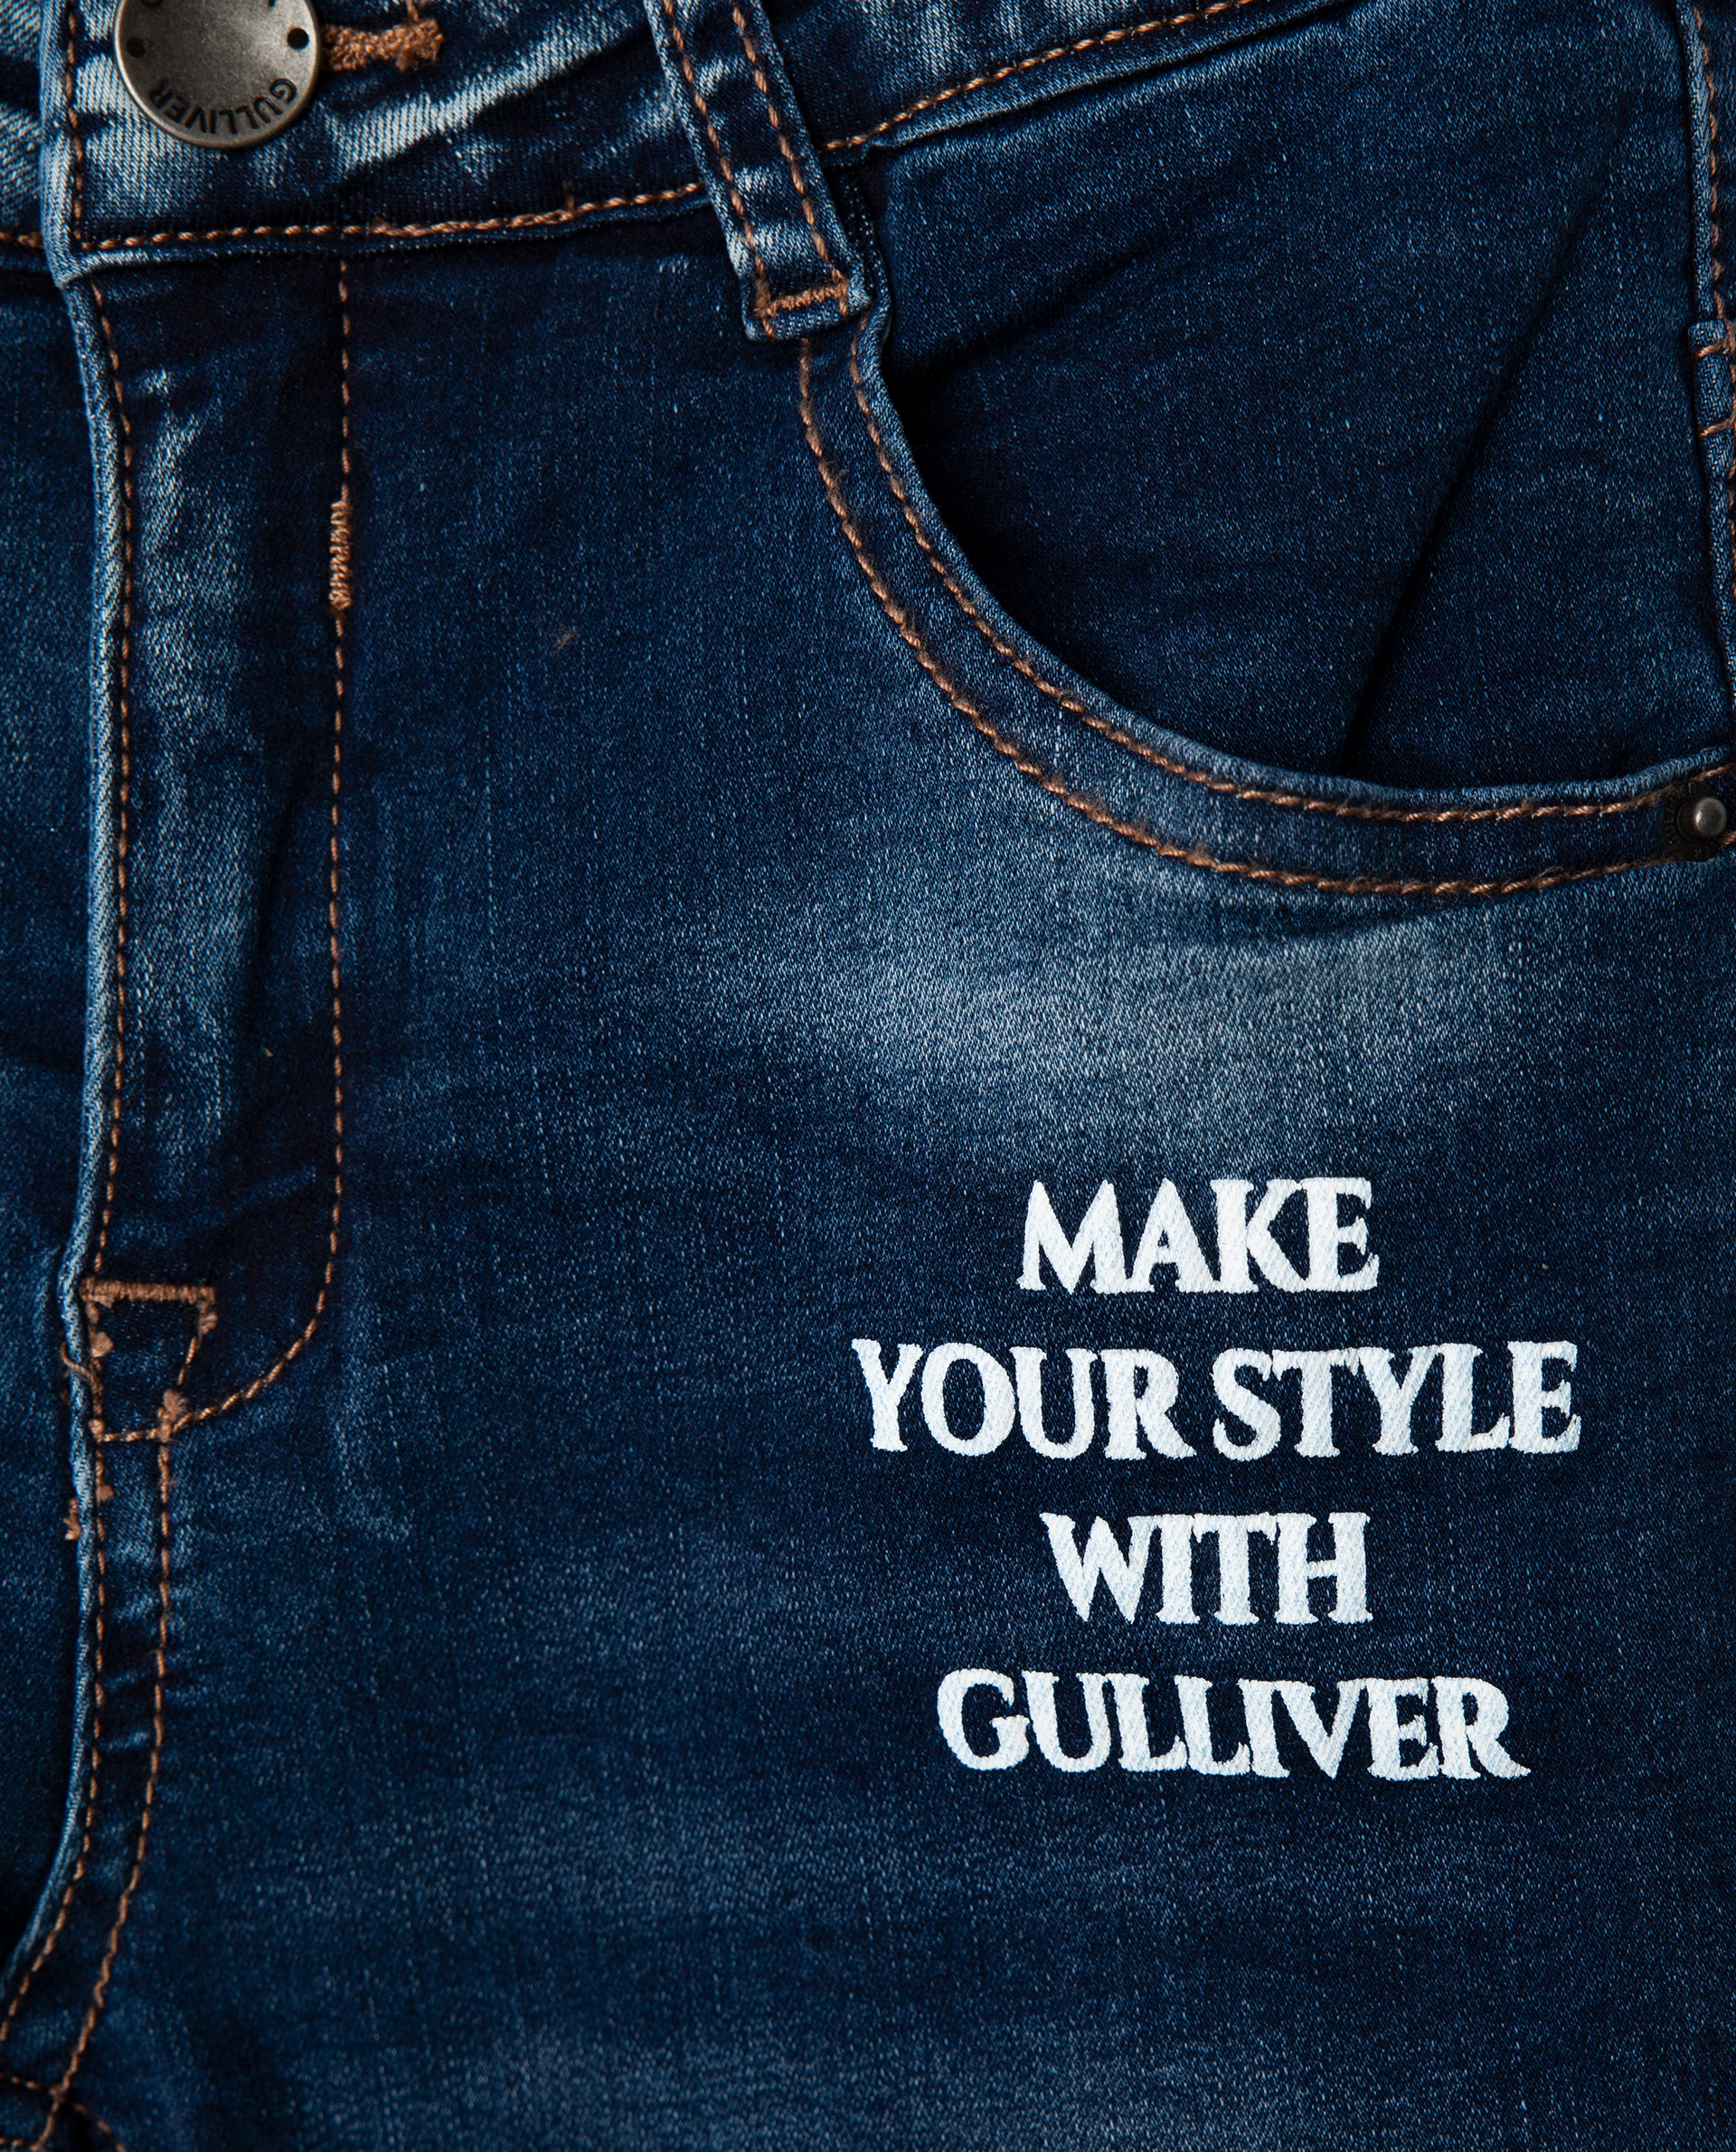 Голубые джинсы утепленные Gulliver 22002GMC6402, размер 128, цвет голубой regular fit / прямые - фото 3